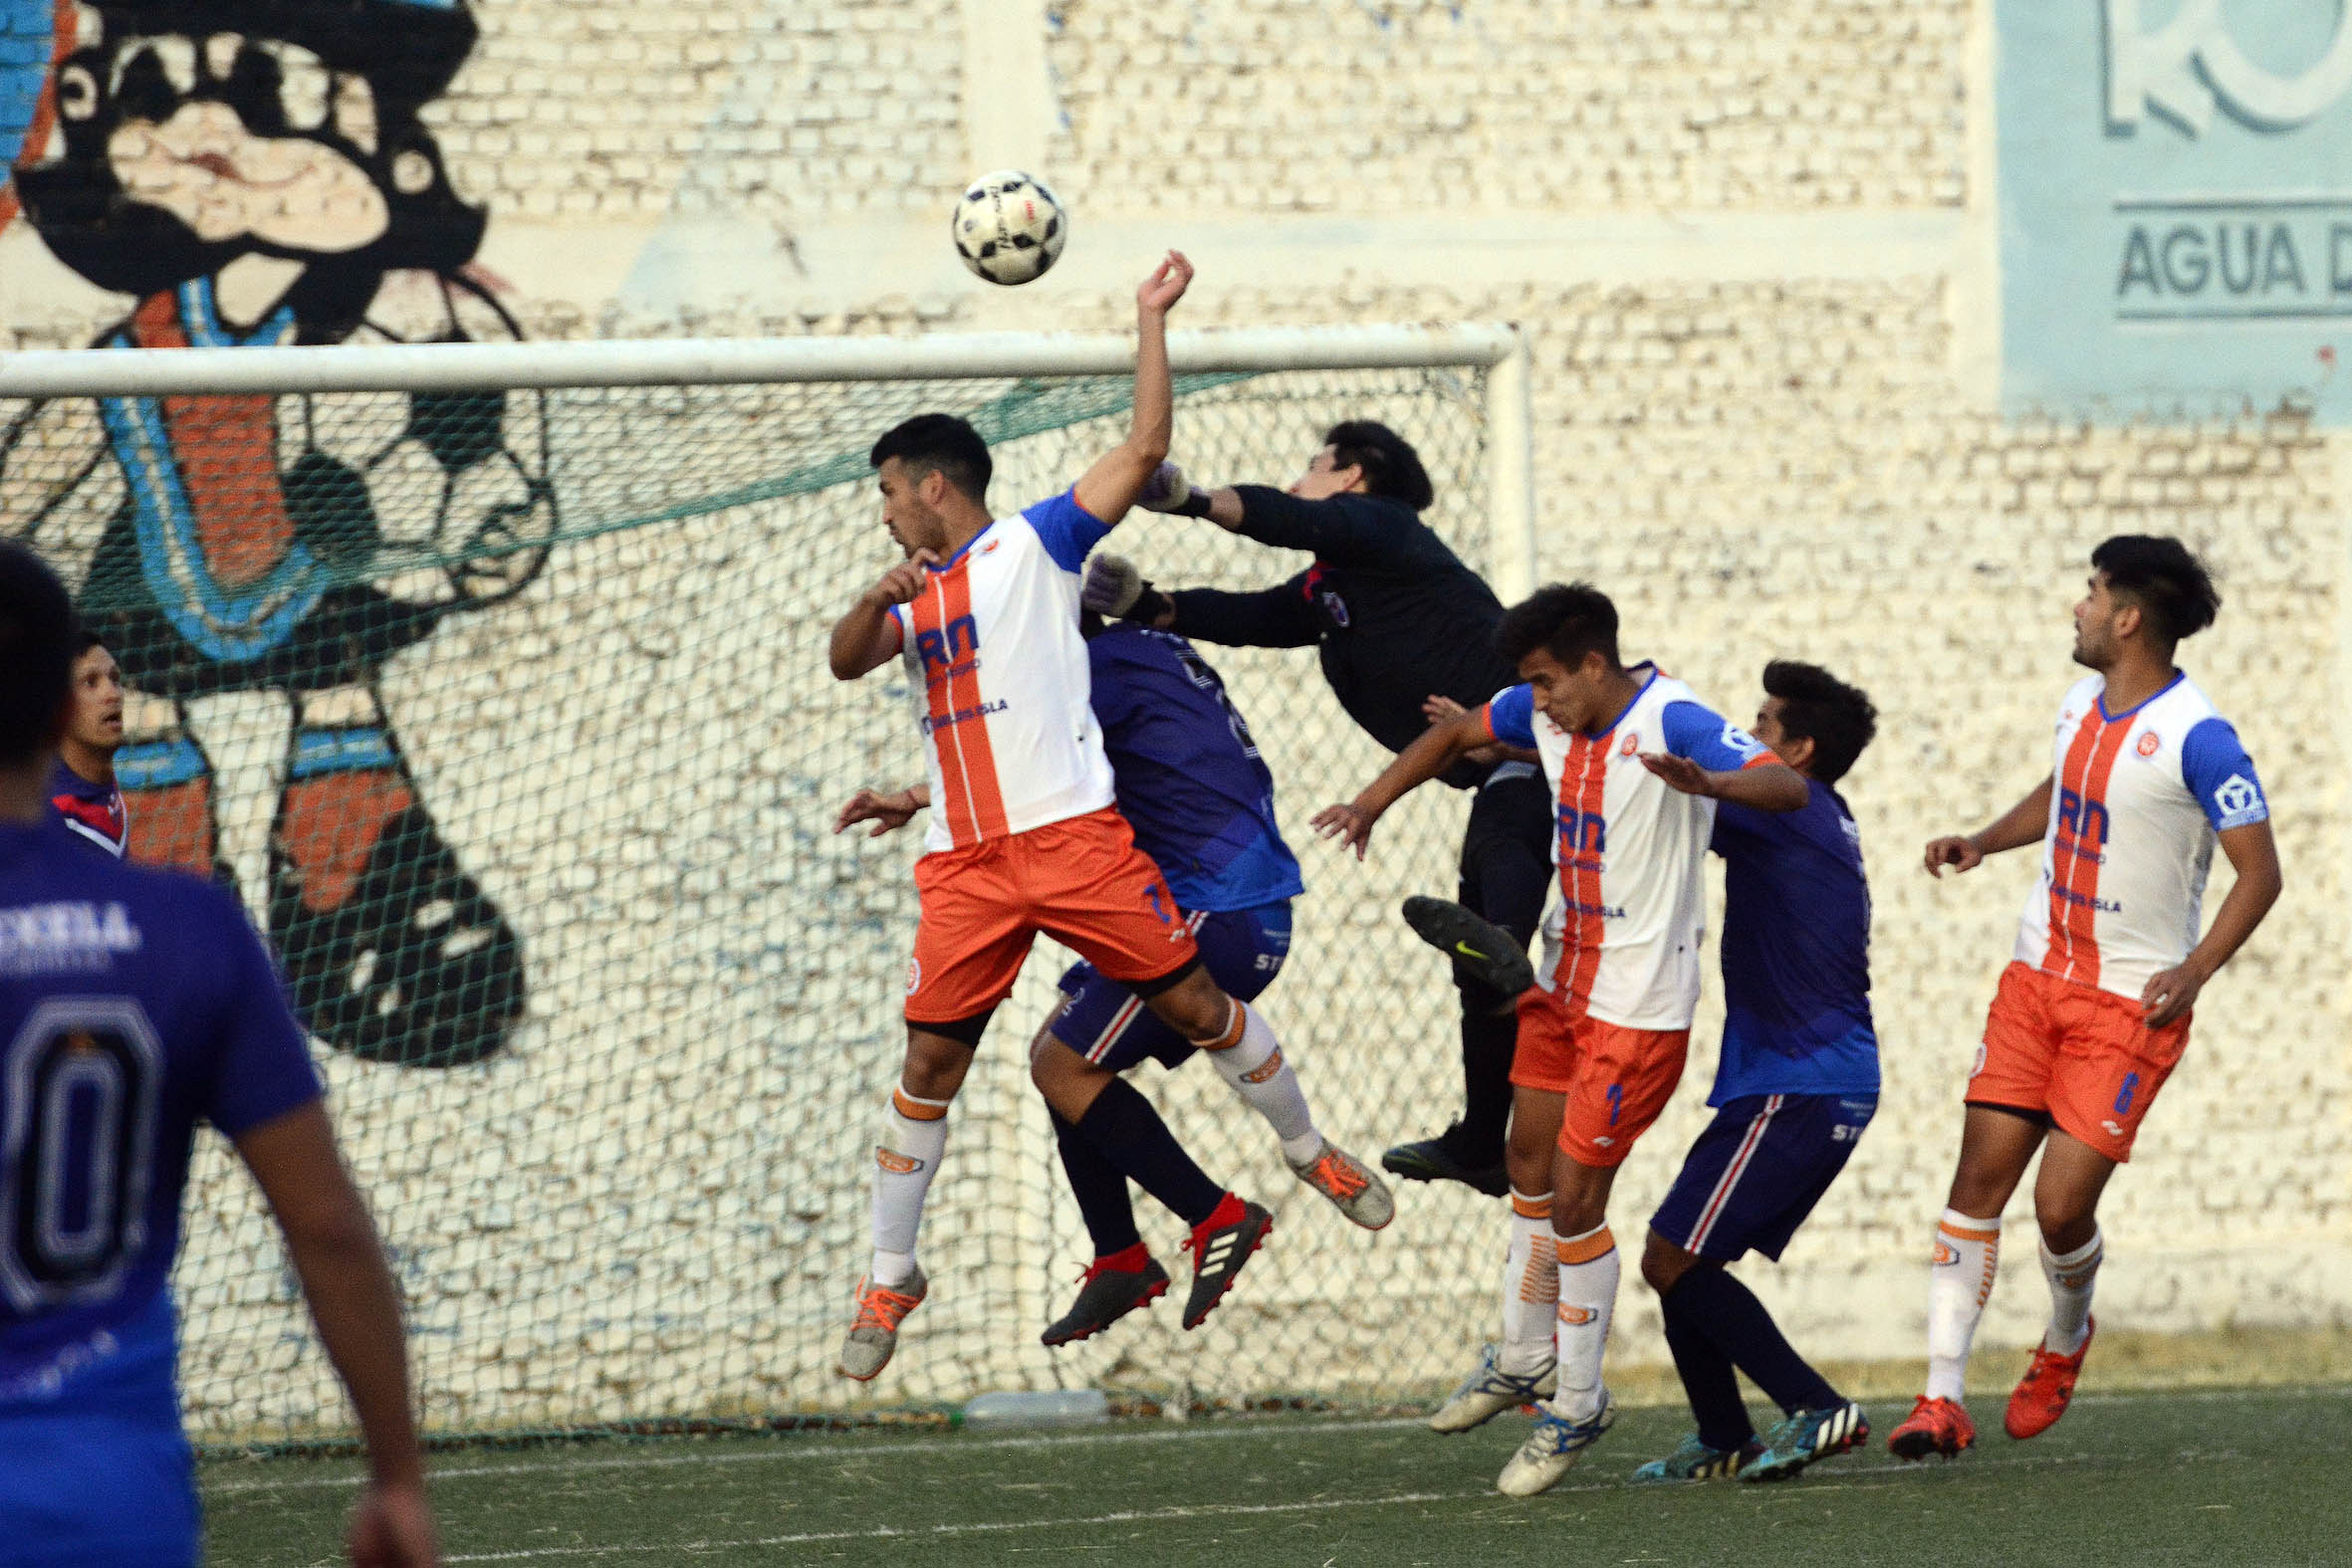 La lucha en la pelota parada siempre es una batalla en los partidos del fútbol regional. Foto: Andrés Maripe. 